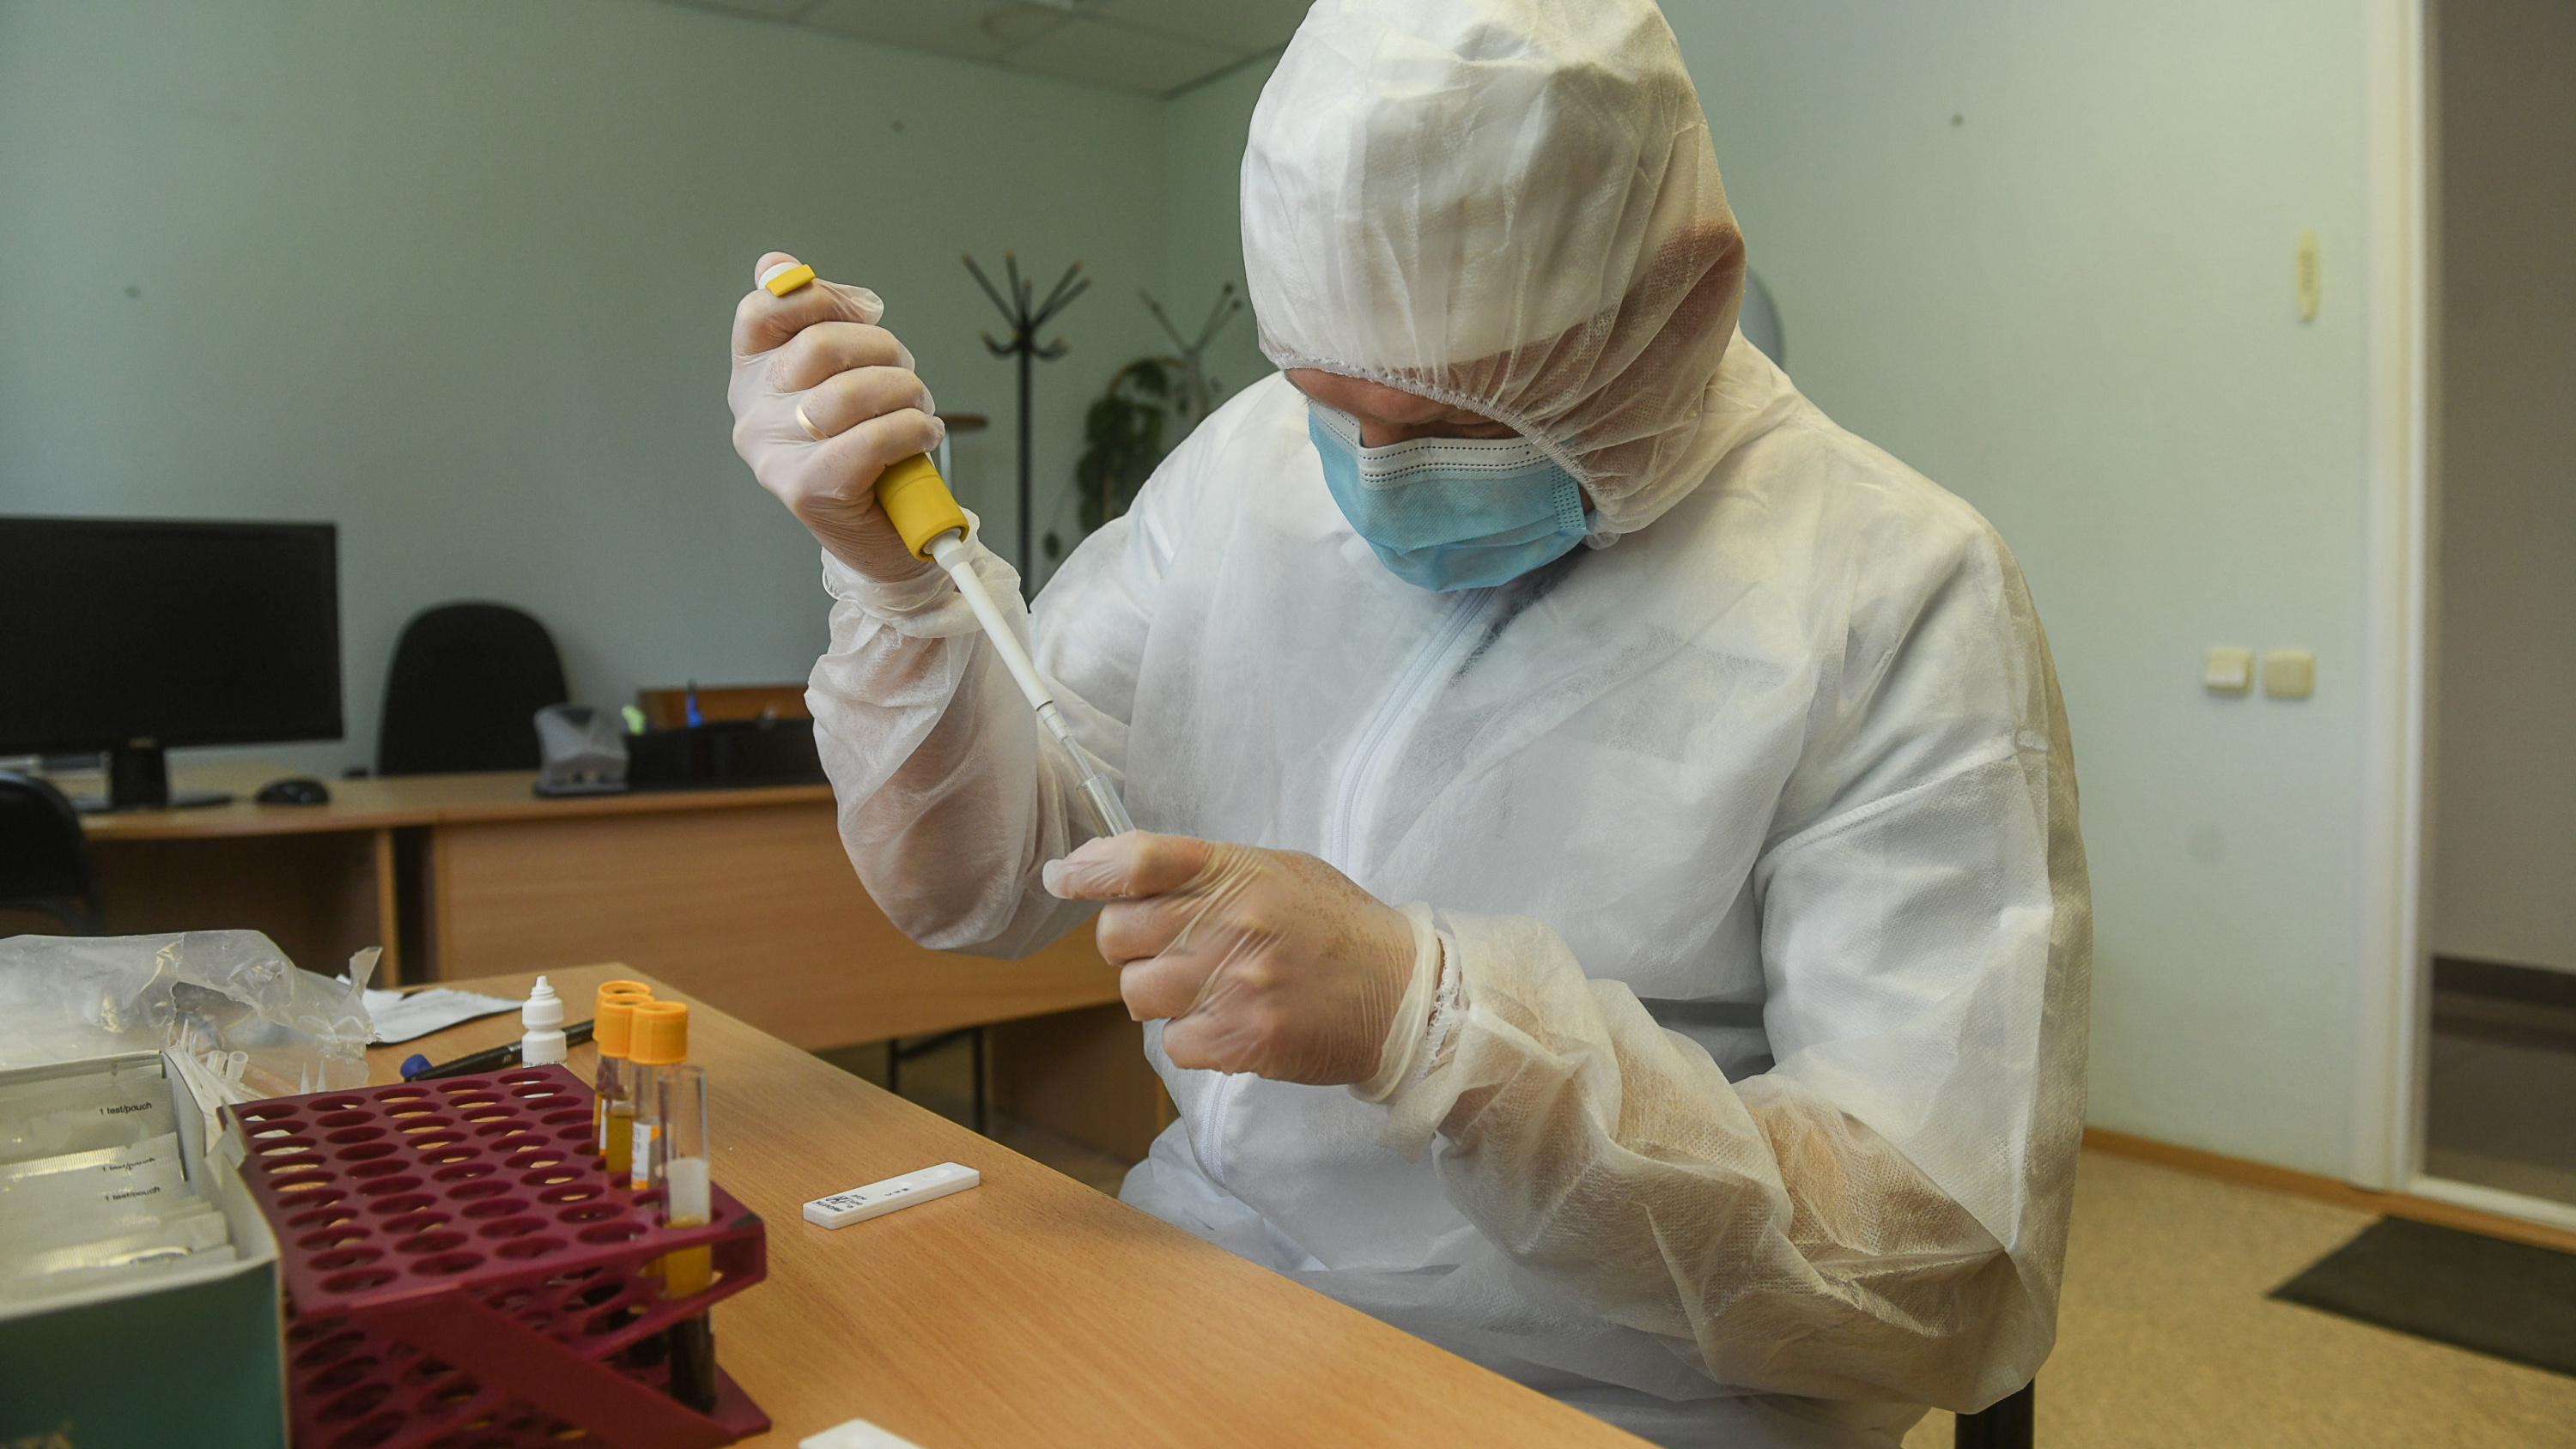 Проверить антитела к ковиду: сколько стоит тест в Иркутске и где его можно сделать?